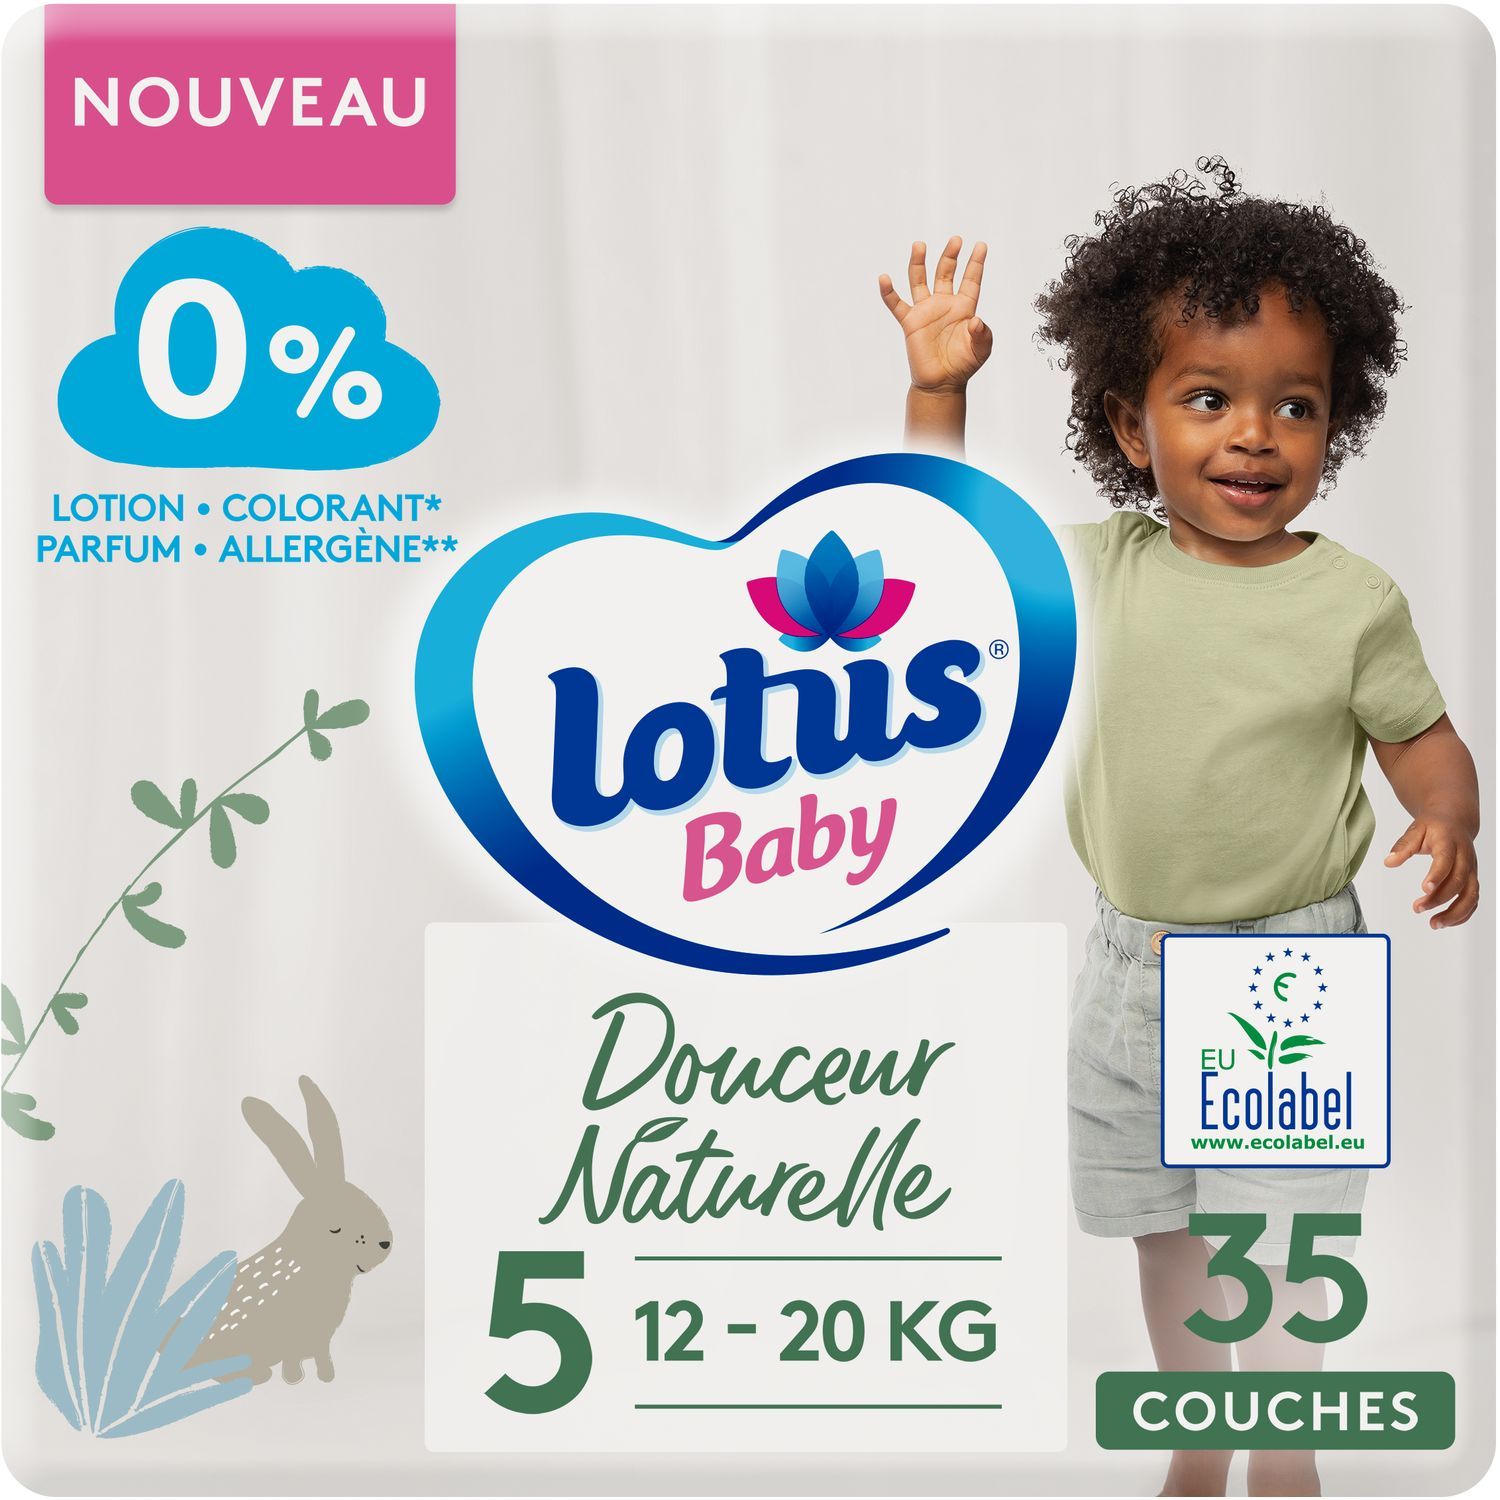 Promo Changes ouverts Lotus Baby douceur naturelle chez E.Leclerc